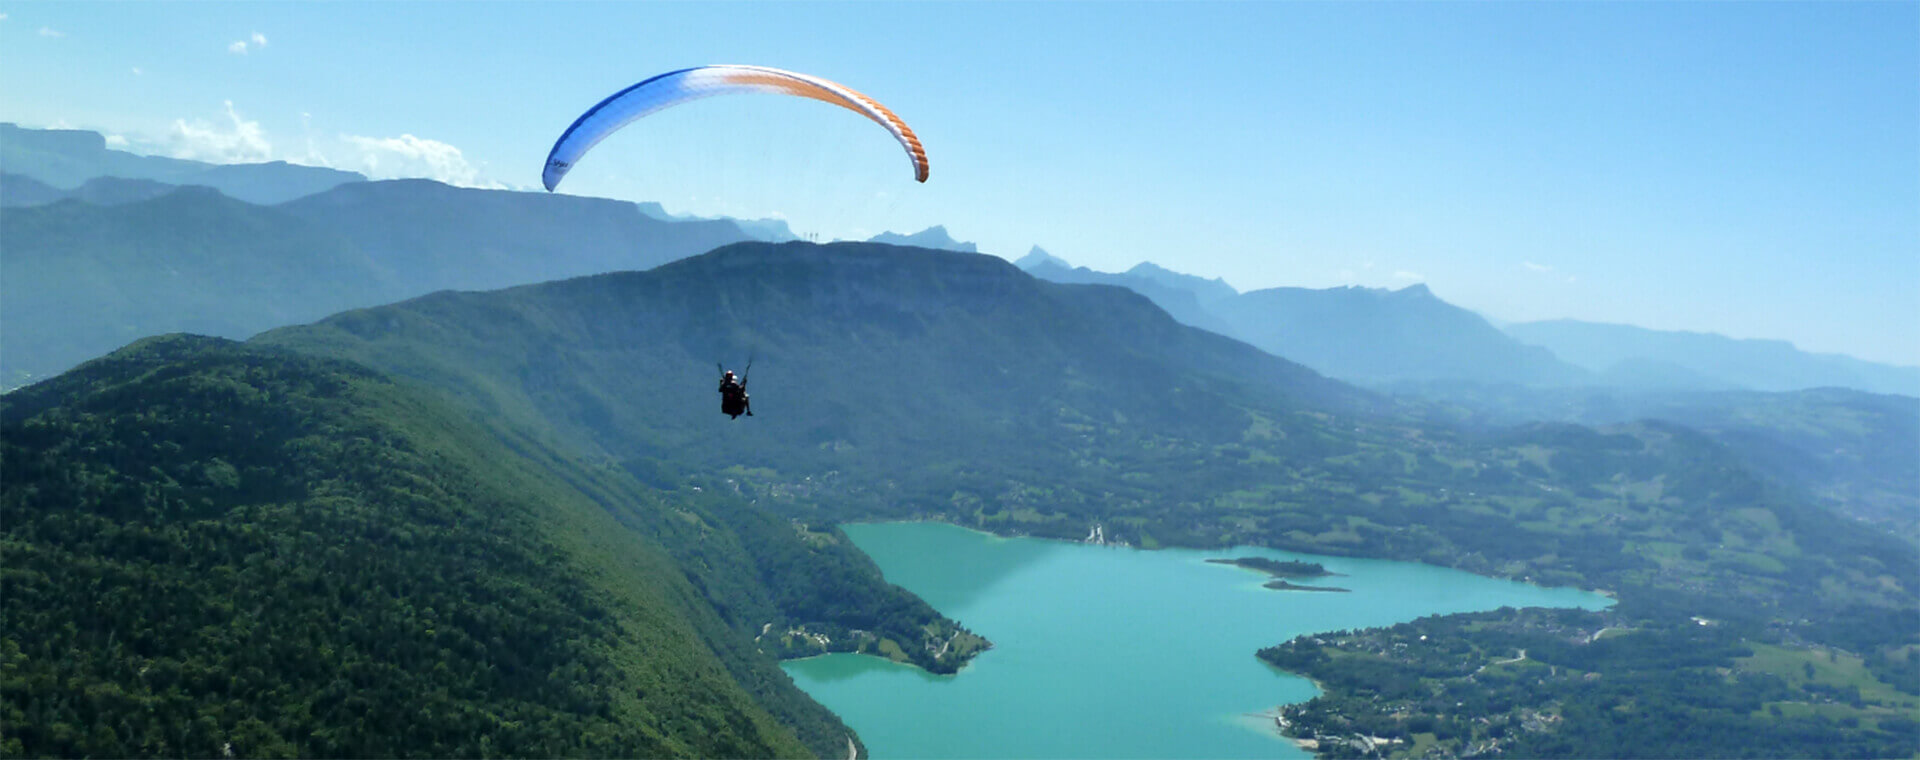 Paragliding, sportieve openluchtactiviteiten in de Savoie